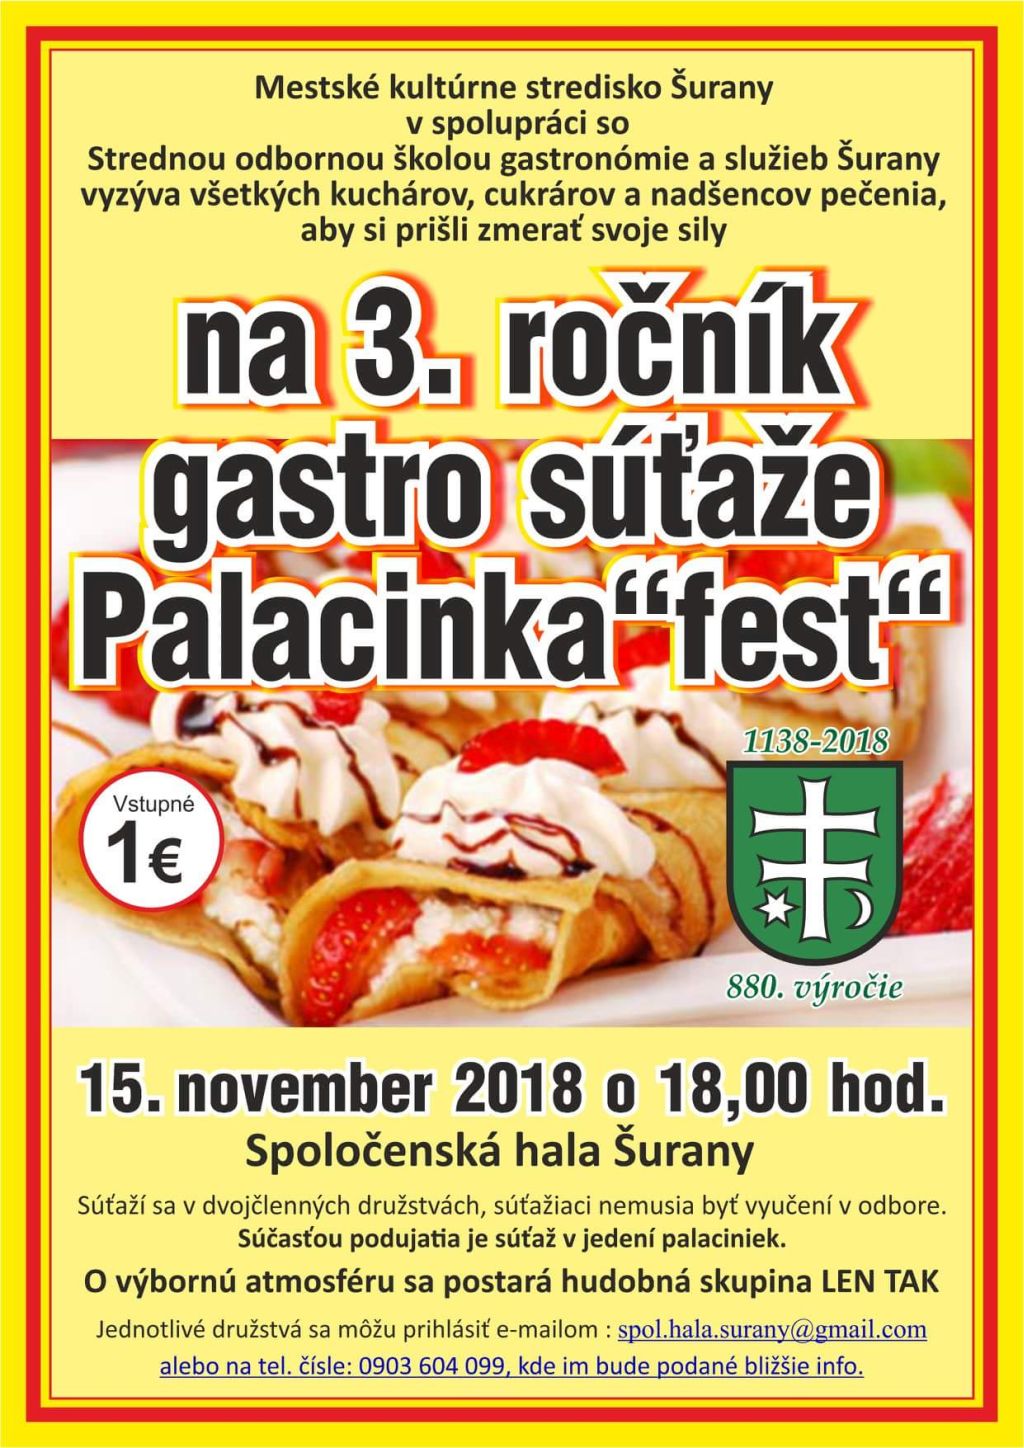 Palacinka-fest 2018 Šurany - 3. ročník gastro súťaže